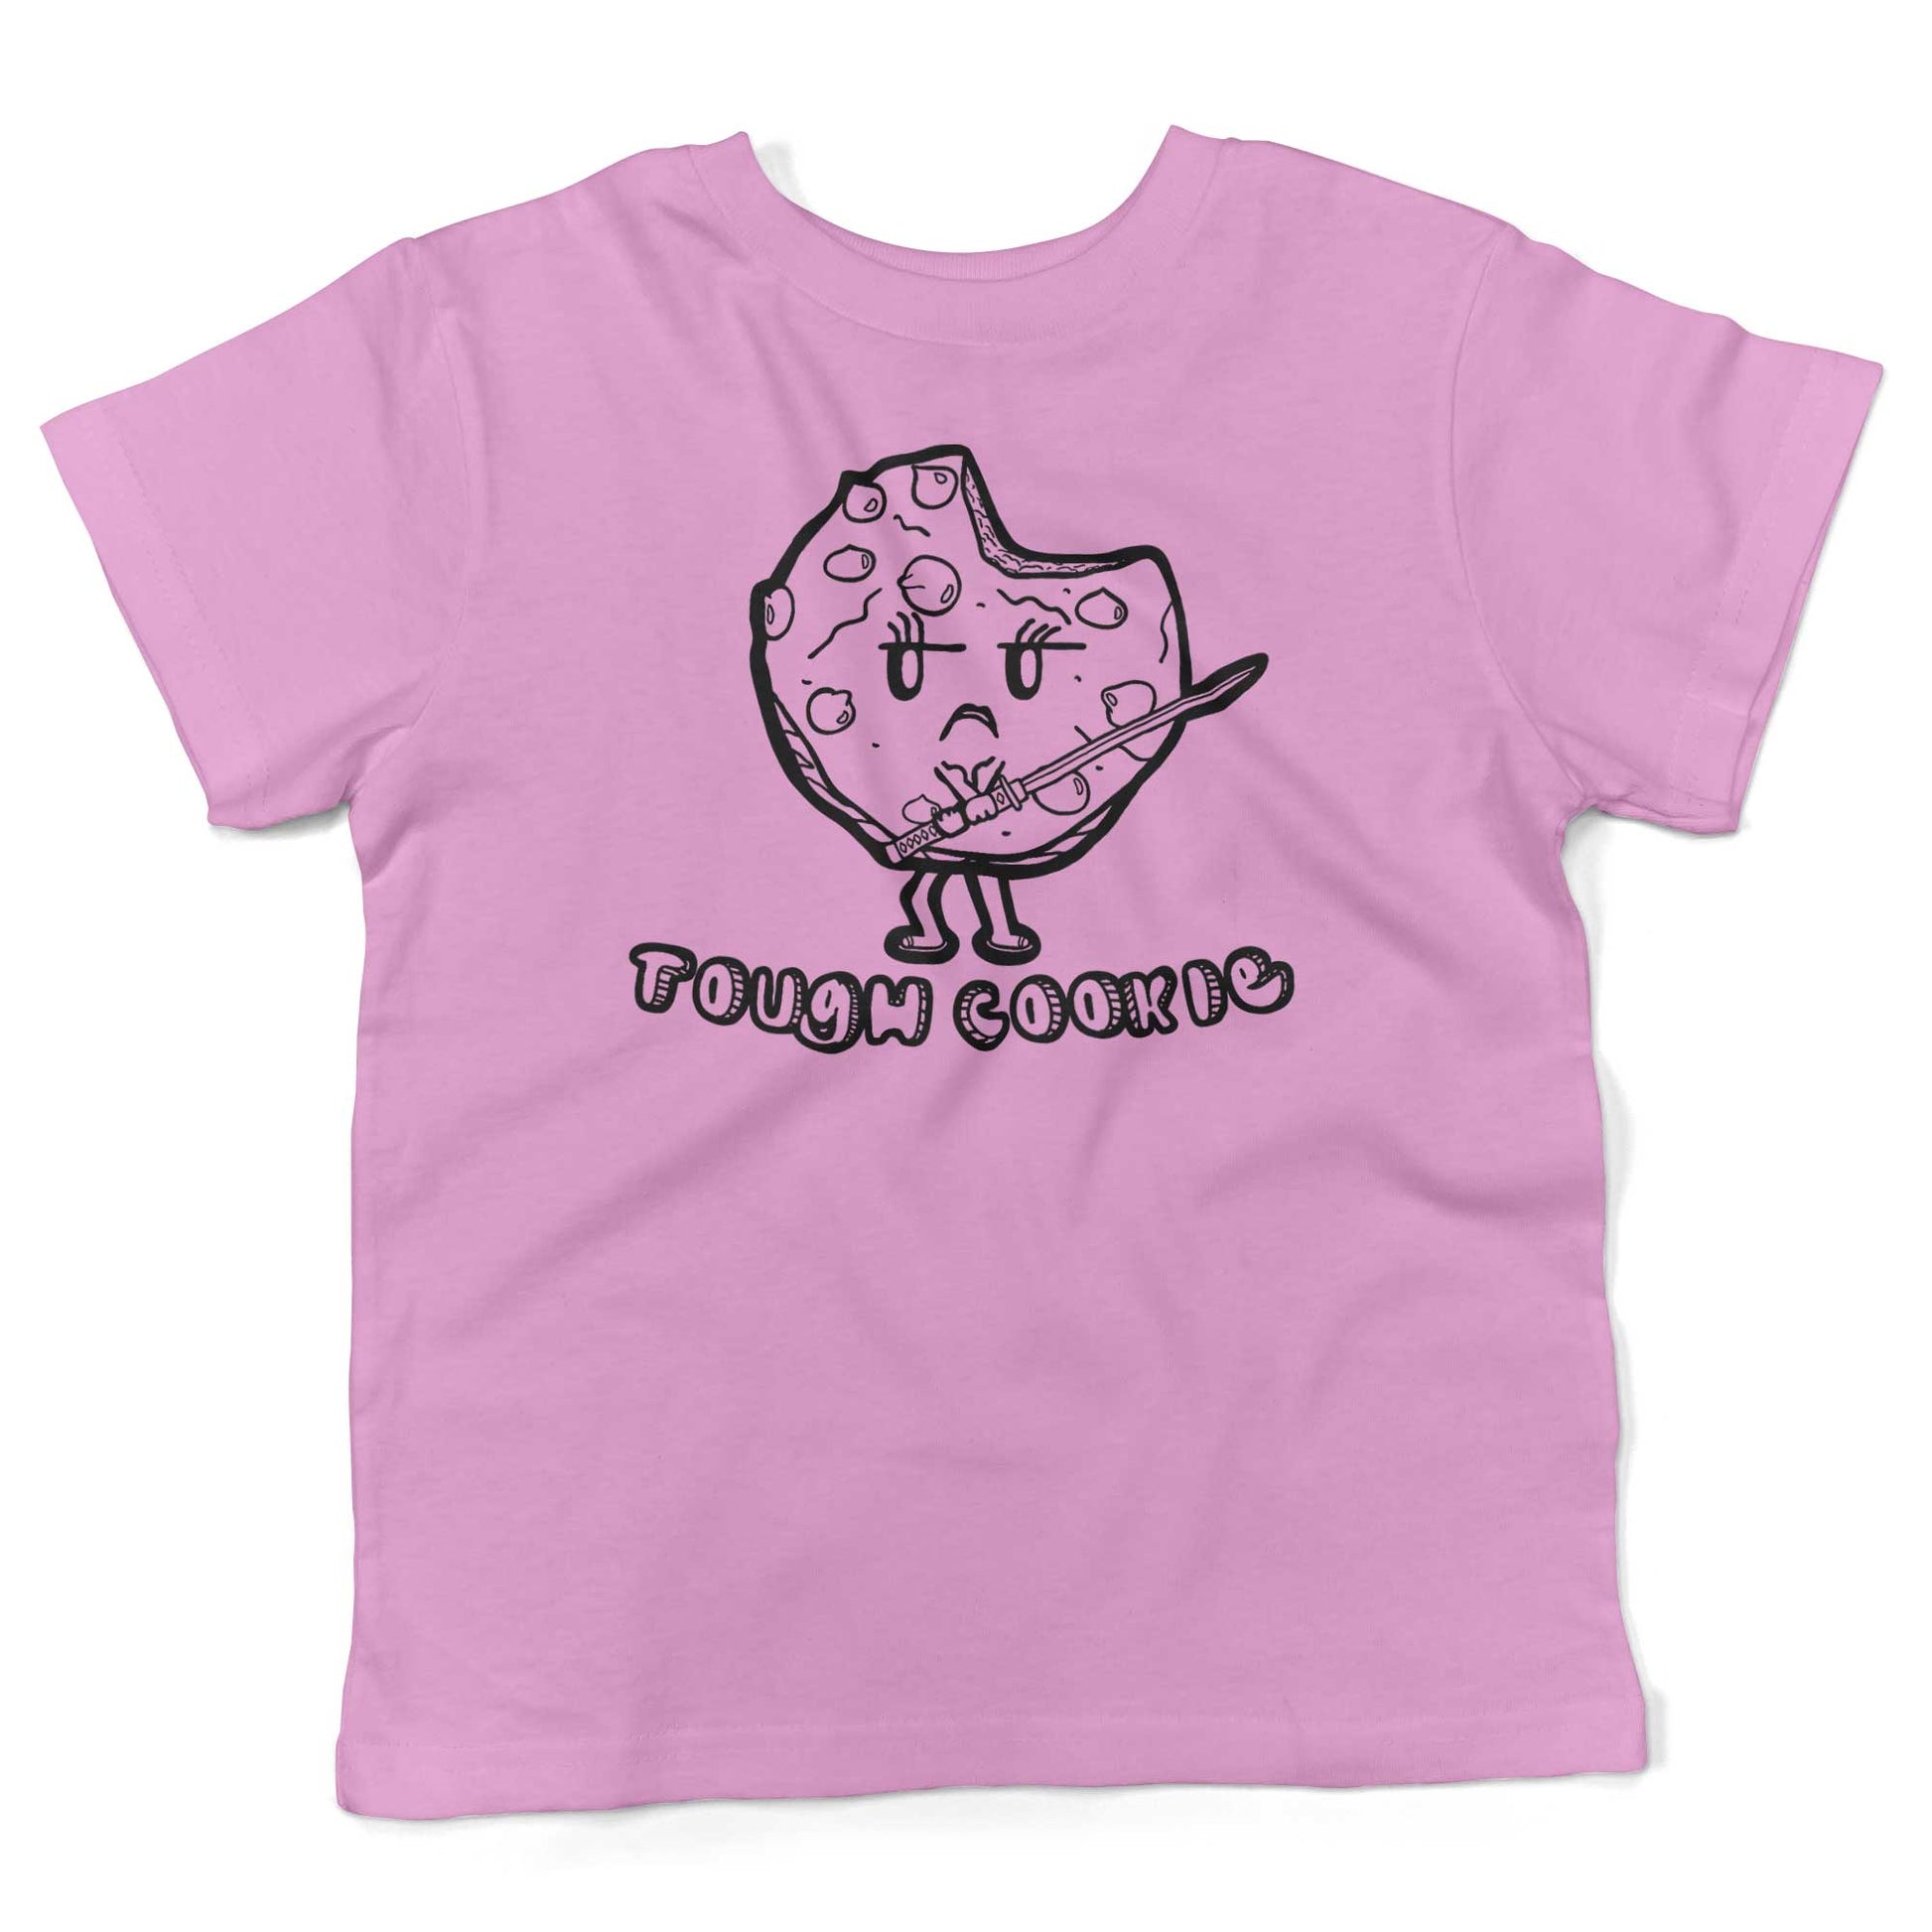 Tough Cookie Toddler Shirt-Organic Pink-2T